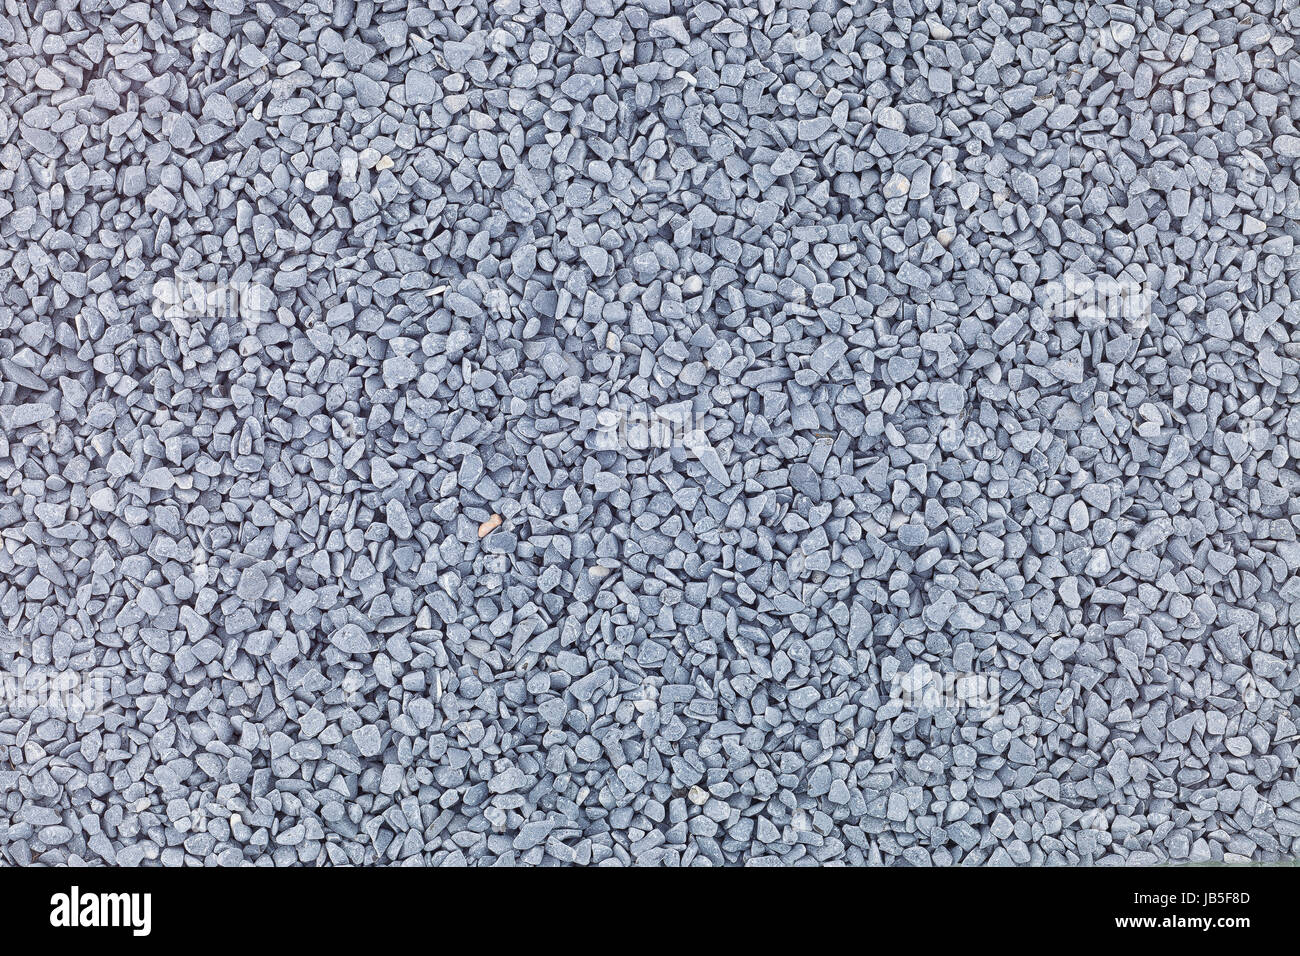 gray stones texture Stock Photo